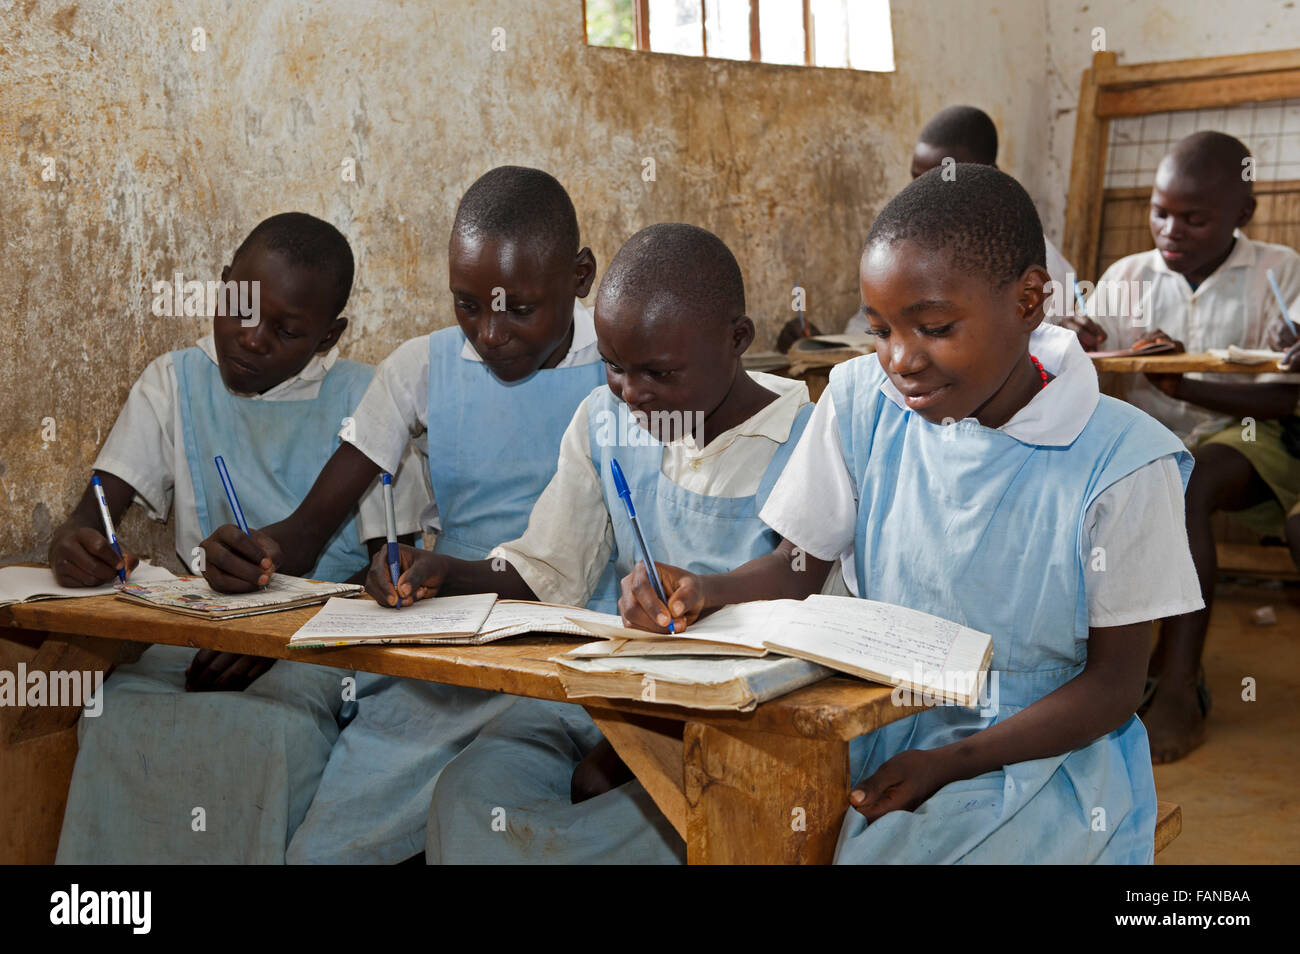 Les enfants dans une salle de classe à une école rurale au Kenya. Banque D'Images